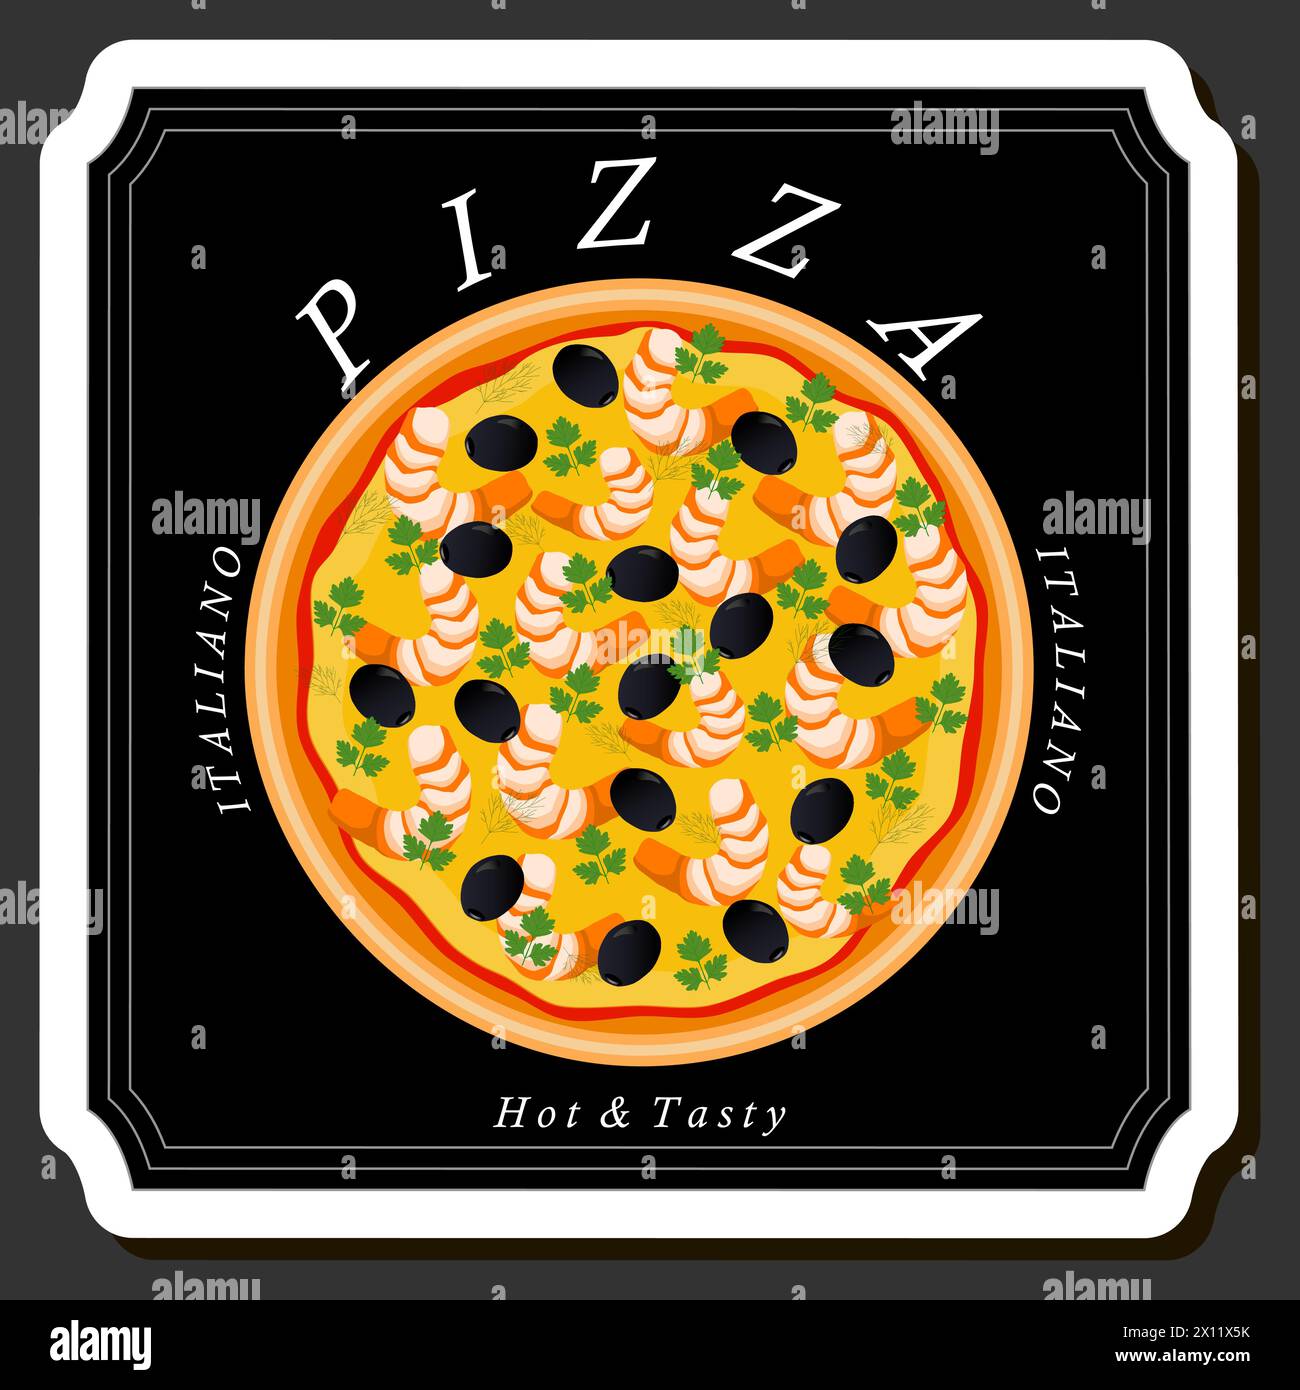 Ilustración sobre el tema Gran pizza sabrosa caliente al menú de pizzería, pizza italiana que consta de varios ingredientes como masa crujiente al horno, tomate rojo, GE Ilustración del Vector